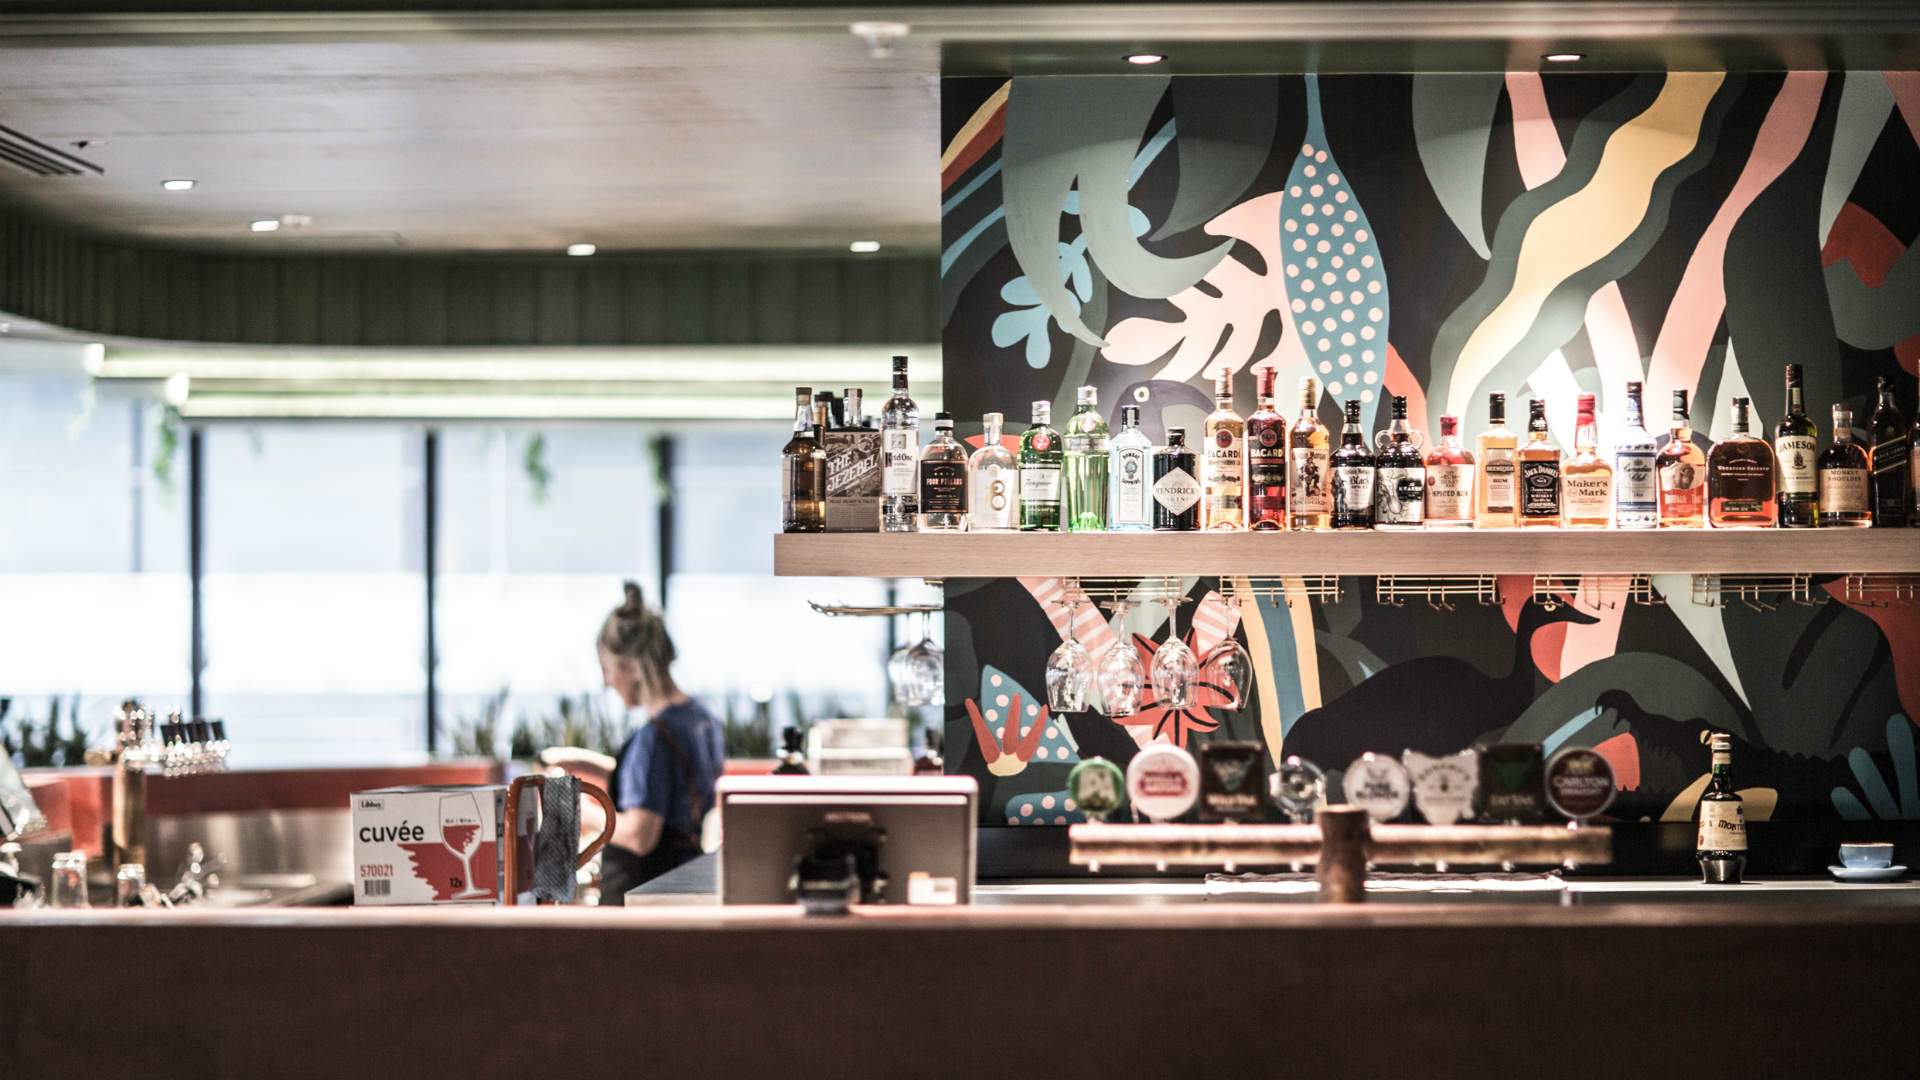 Melbourne's New Food Court-Like Bar Lets You Order Via App